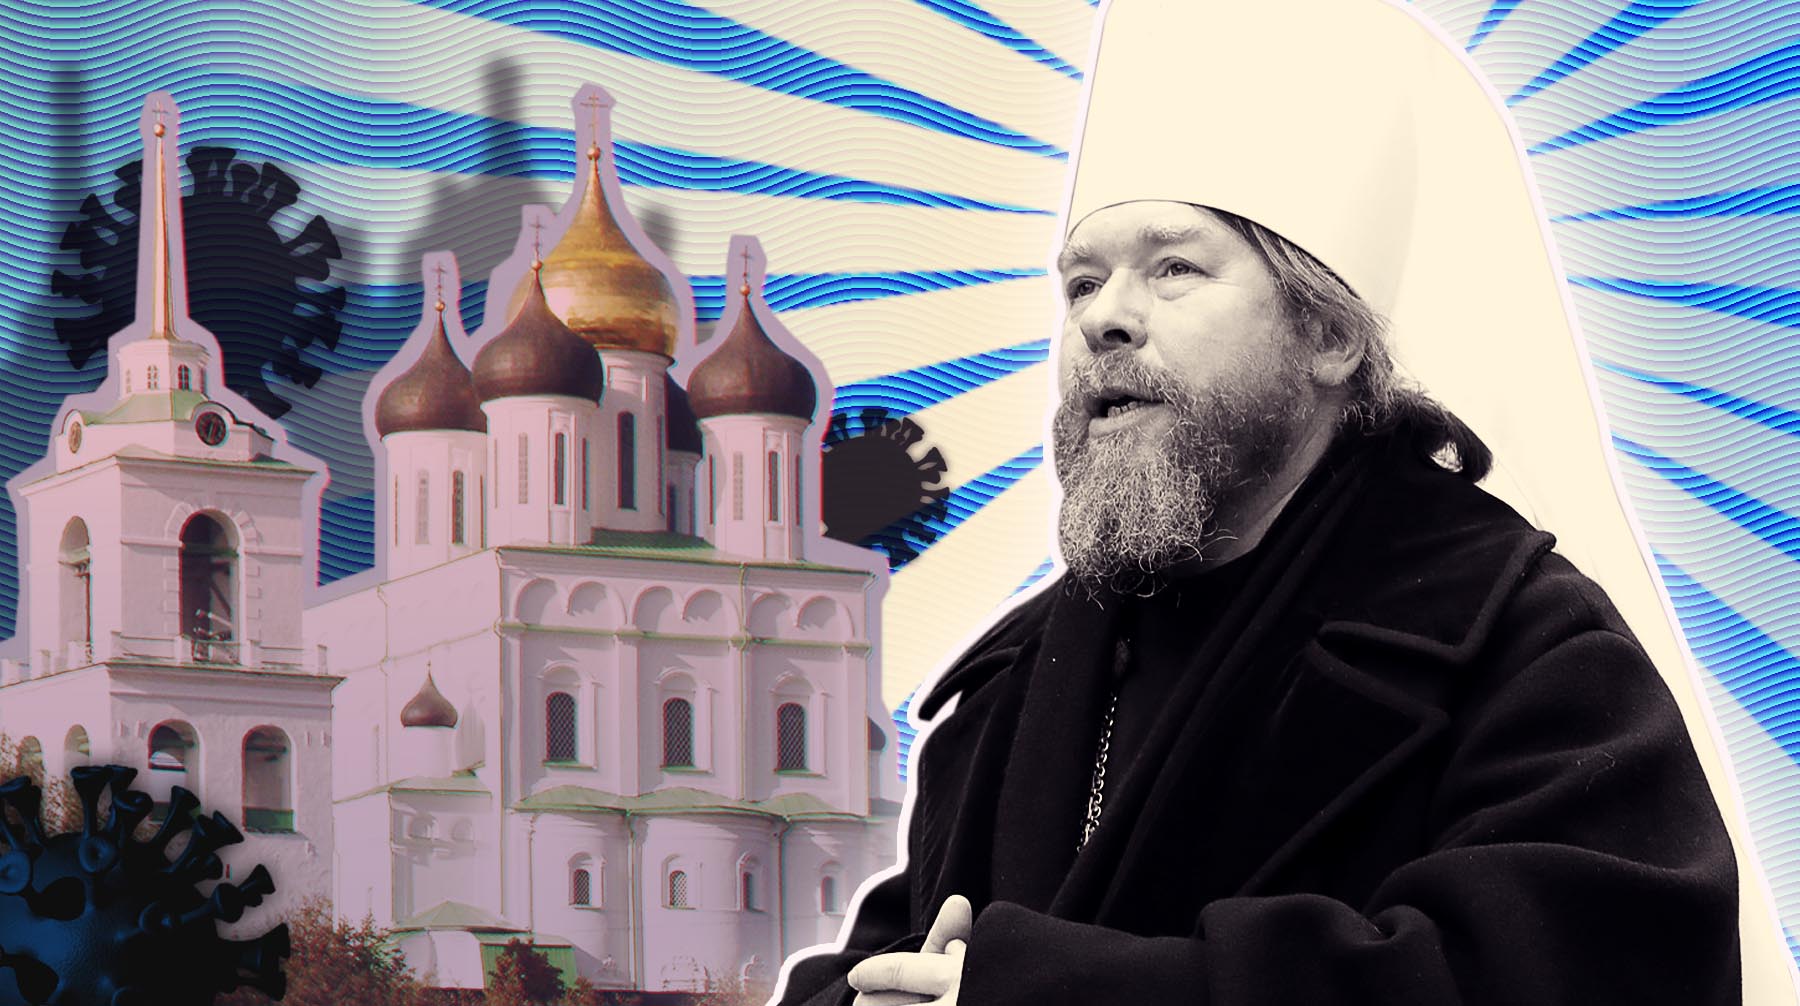 Daily Storm взял интервью у одного из самых известных православных священников России Коллаж: Daily Storm